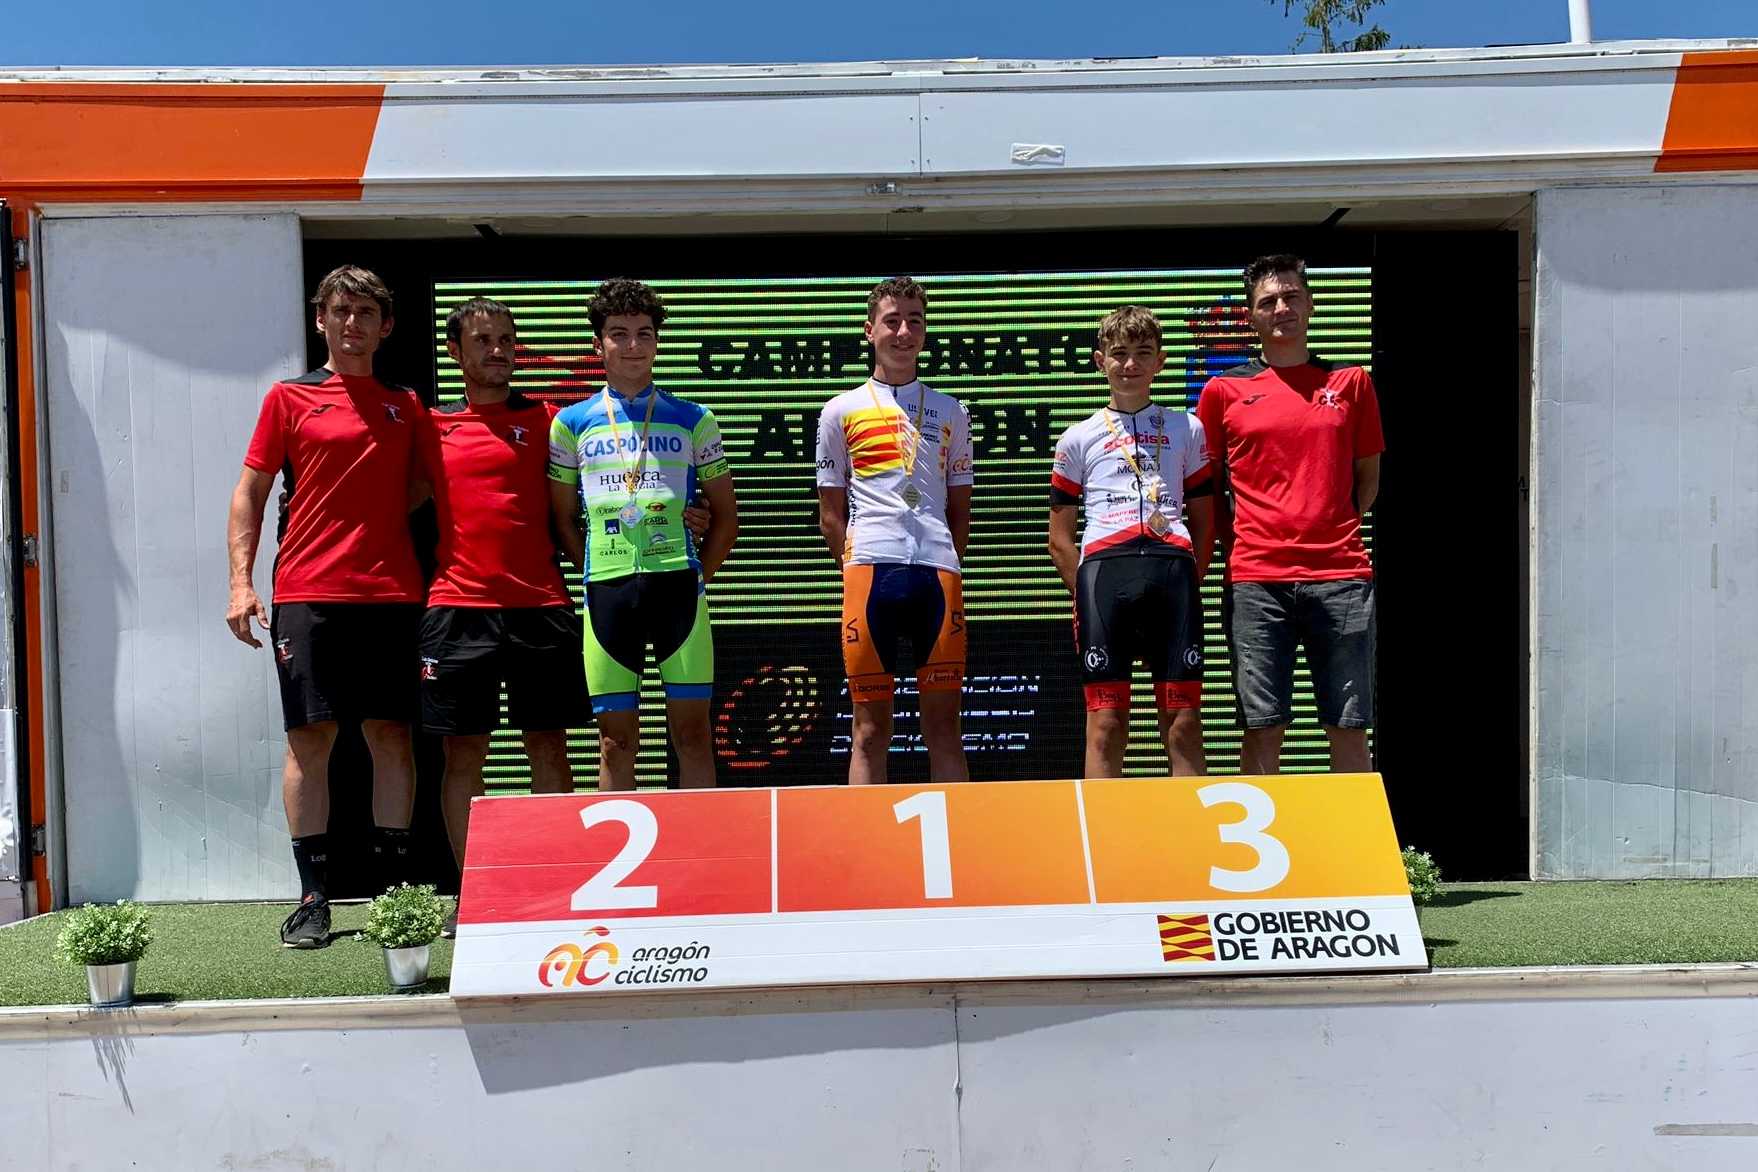 Los aragoneses han disputado el Campeonato Aragón Ruta en Torrellas